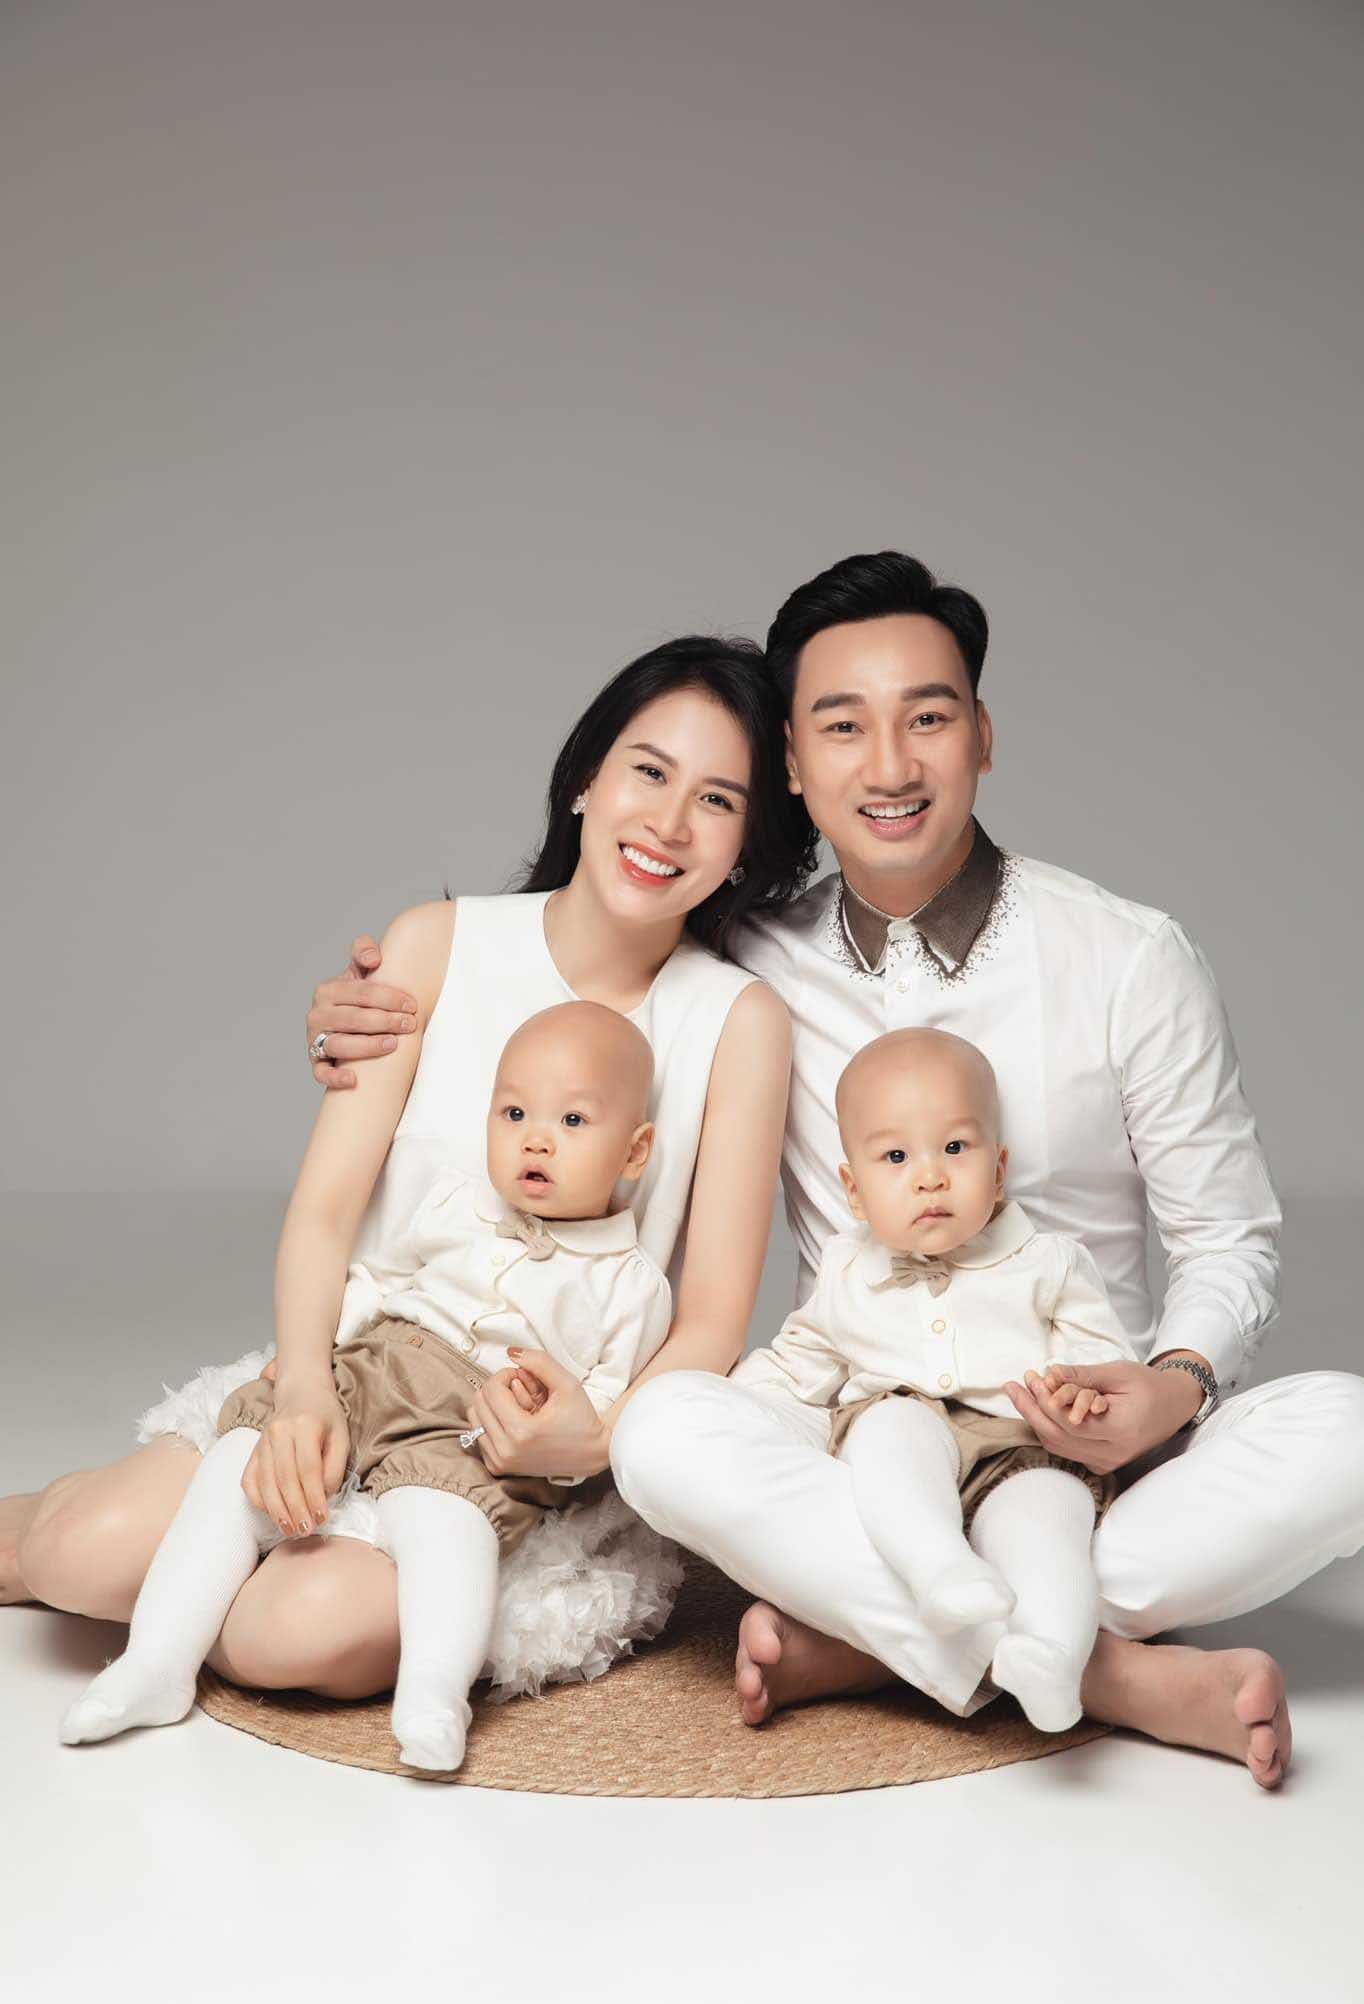 Sau khi kết hôn, Ngọc Hương quyết định nghỉ việc để lui về chăm lo cho gia đình.